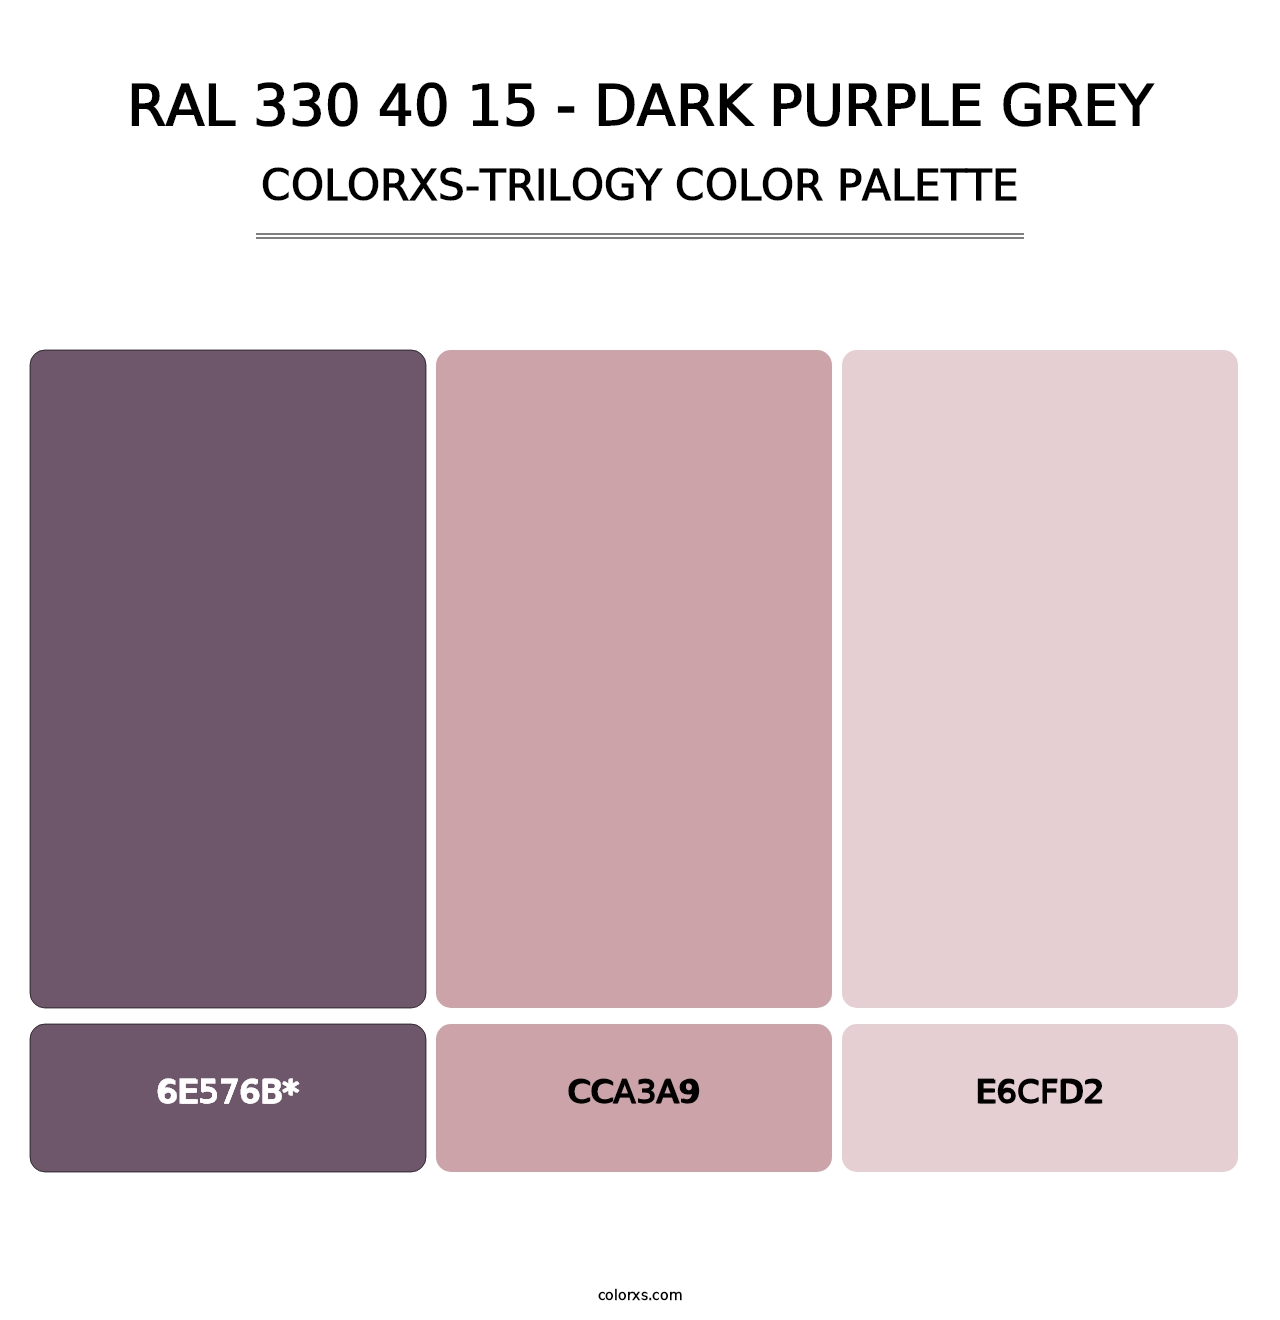 RAL 330 40 15 - Dark Purple Grey - Colorxs Trilogy Palette